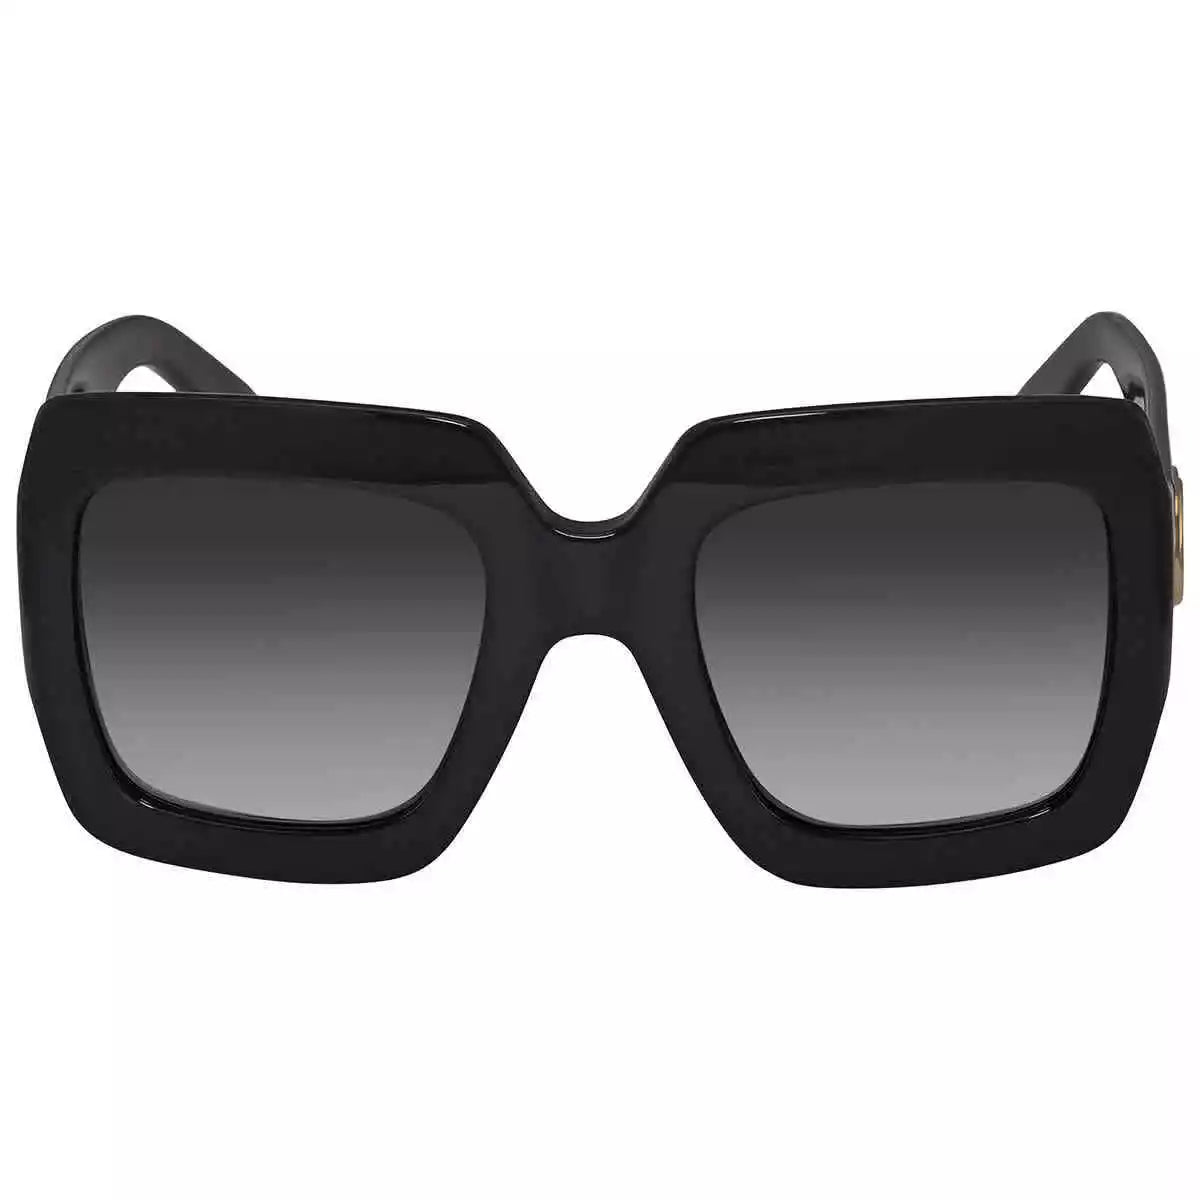 Gucci GG0053SN-001-54  New Sunglasses